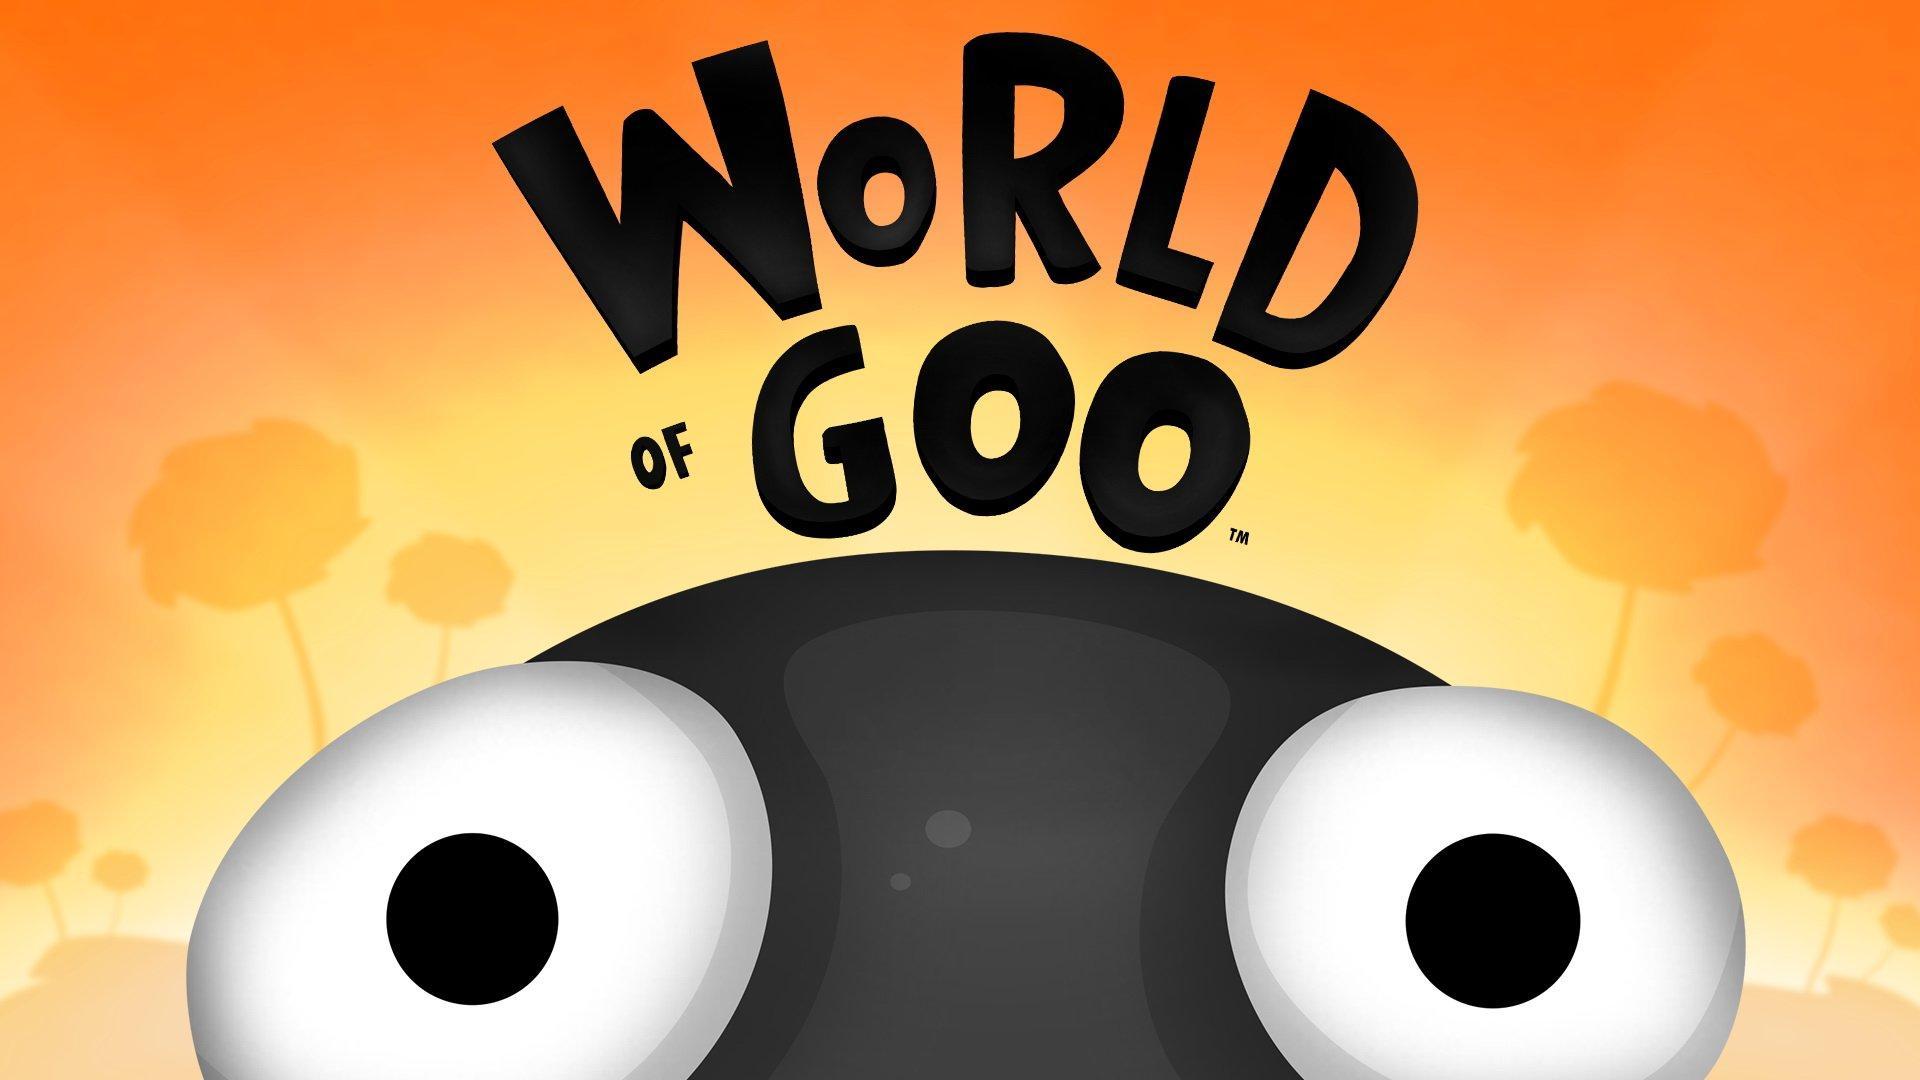 World Of Goo wallpaper 5k, World Of Goo, Game